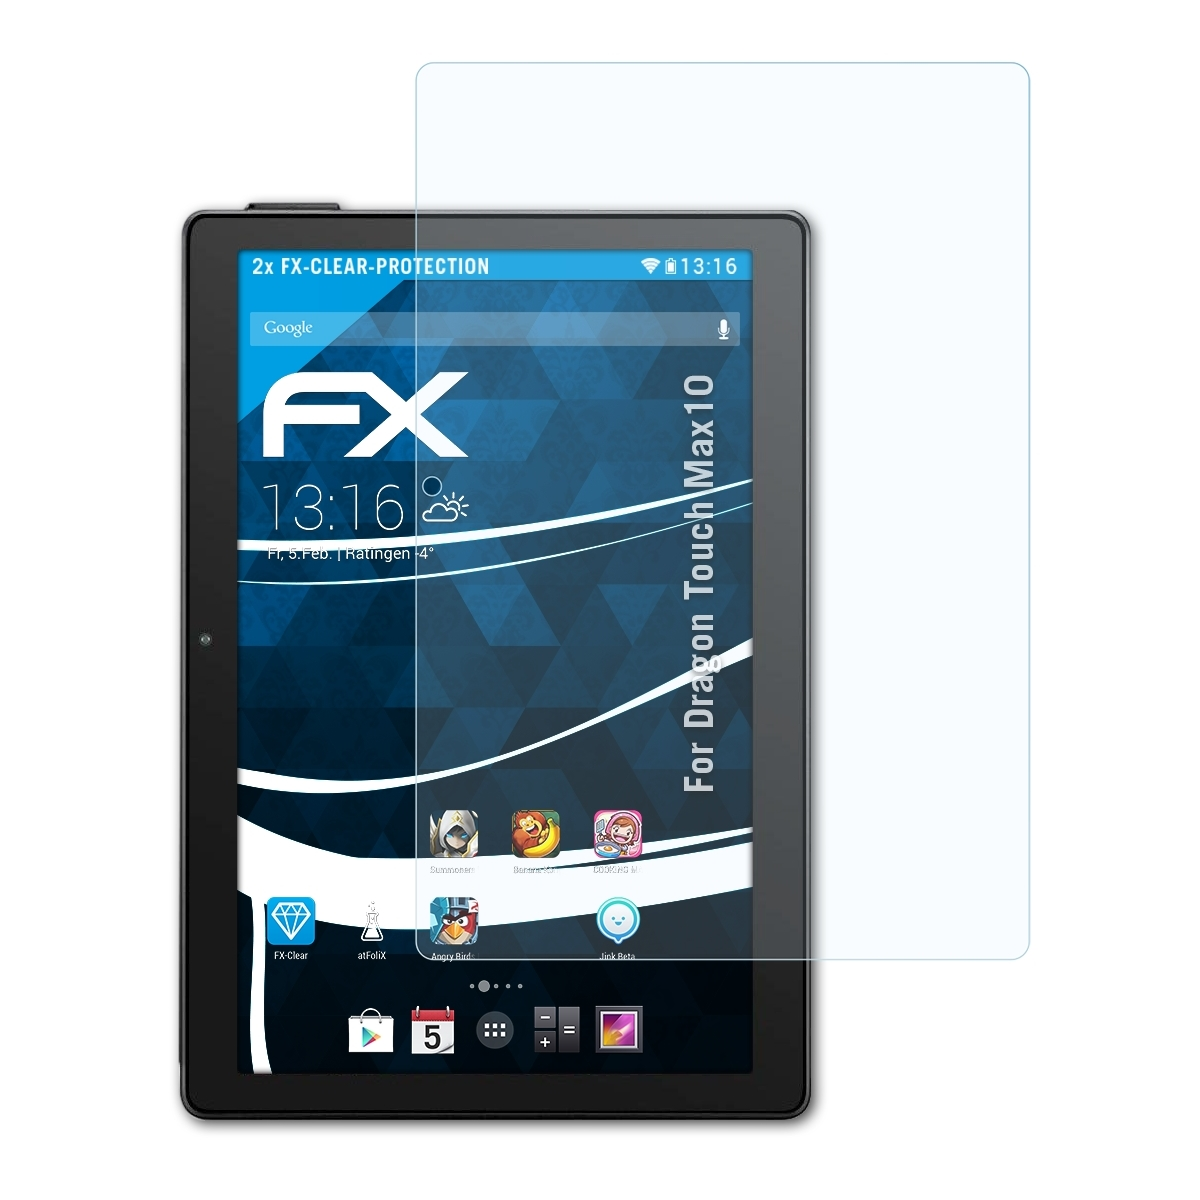 Max10) Dragon Touch ATFOLIX Displayschutz(für FX-Clear 2x